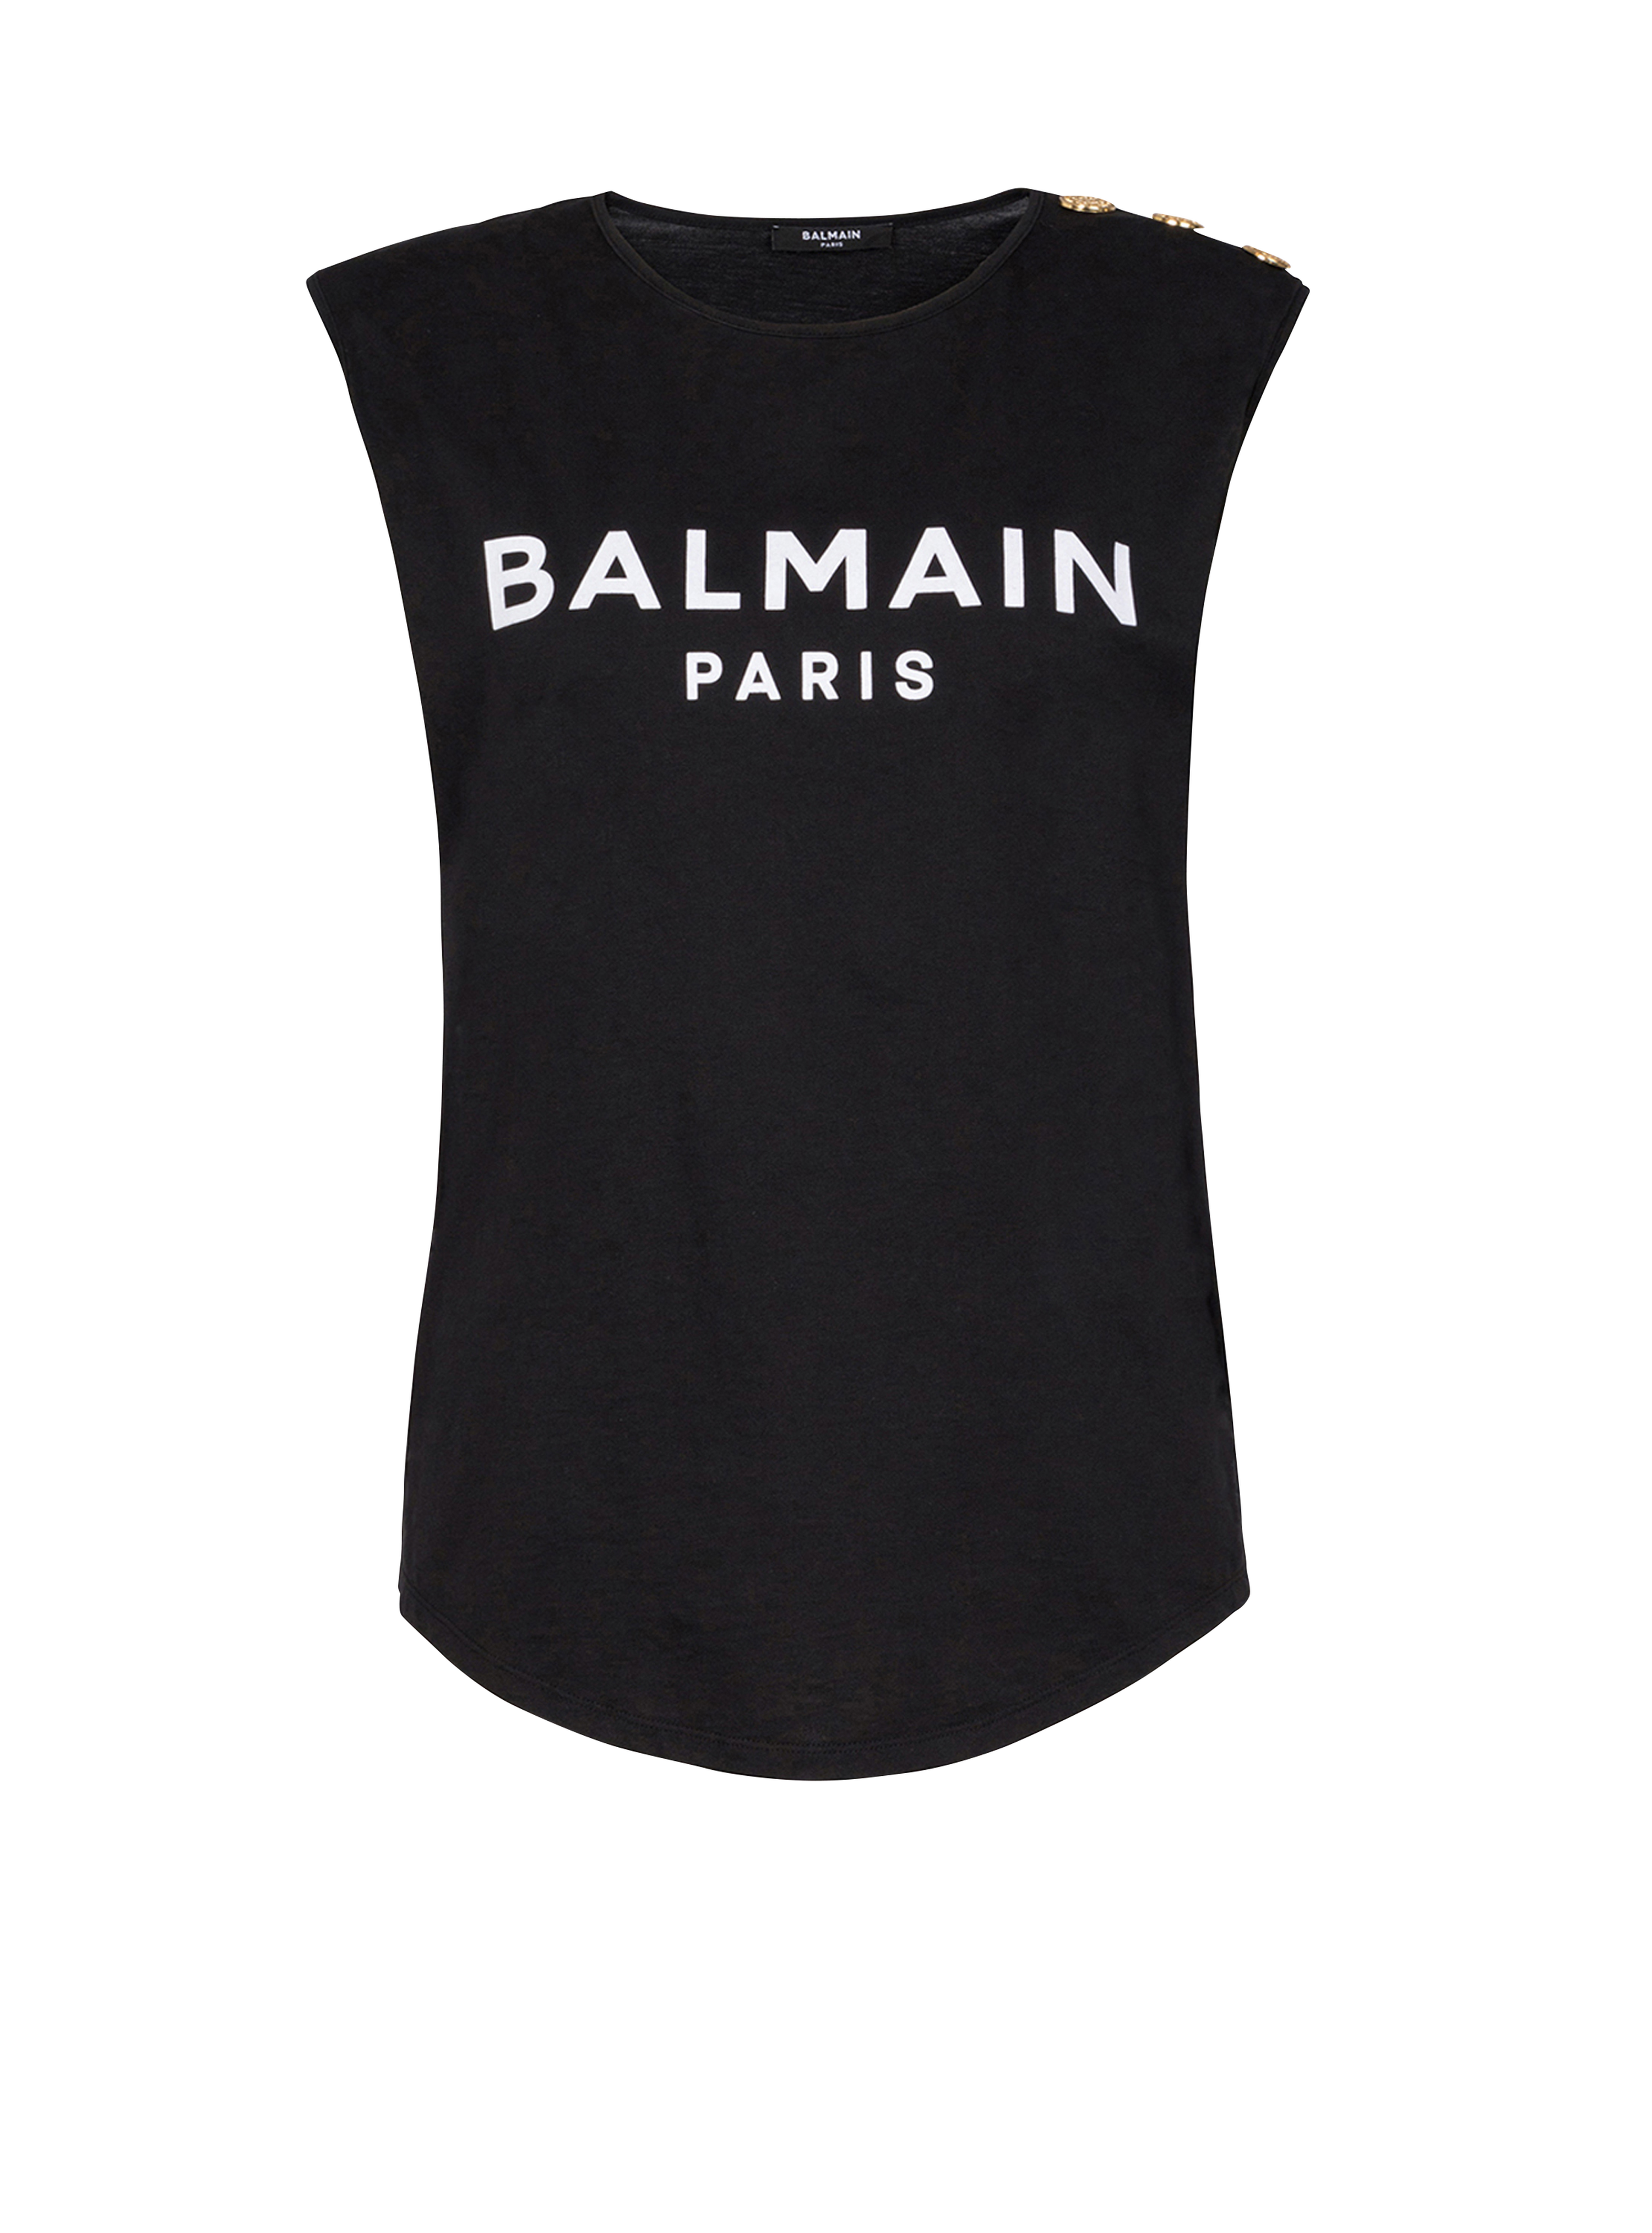 Balmain 로고 프린트 디테일 코튼 티셔츠, 검정색